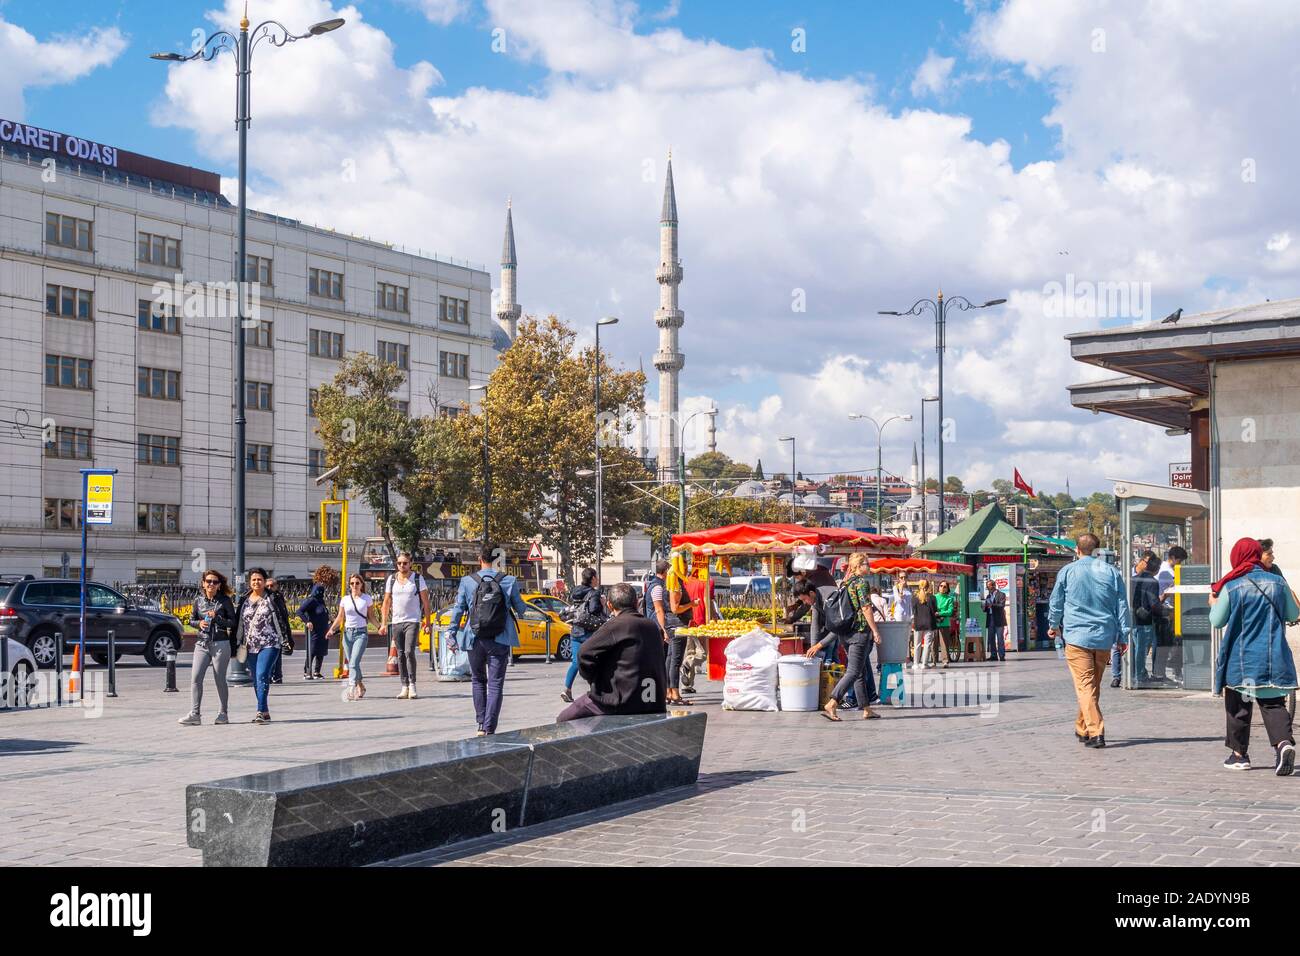 Un fornitore vende carni cotte sulla pannocchia di mais sulla strada di fronte al Ponte di Galata come locali turchi passano ad Istanbul in Turchia. Foto Stock